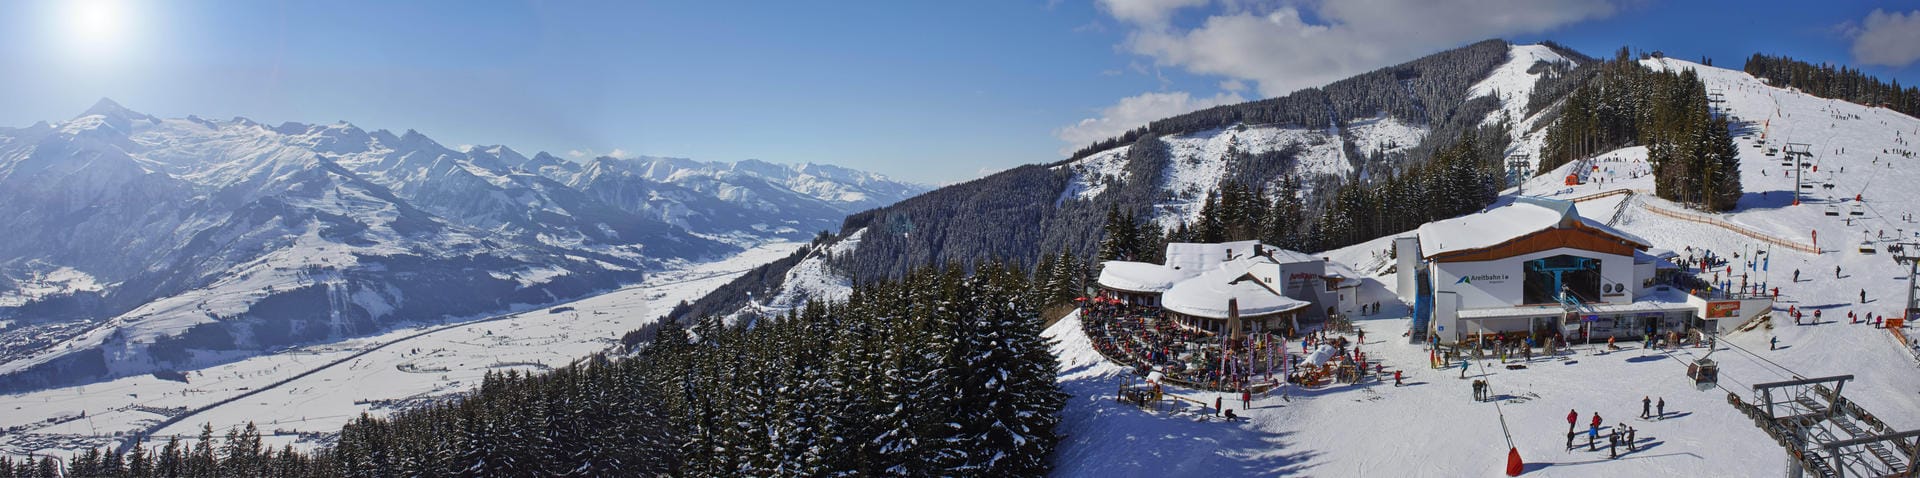 Einer der bekanntesten österreichischen Wintersportorte ist die Urlaubsdestination Zell am See-Kaprun. Auf 1400 Metern lädt dort die "Areitalm" zum Einkehren ein.